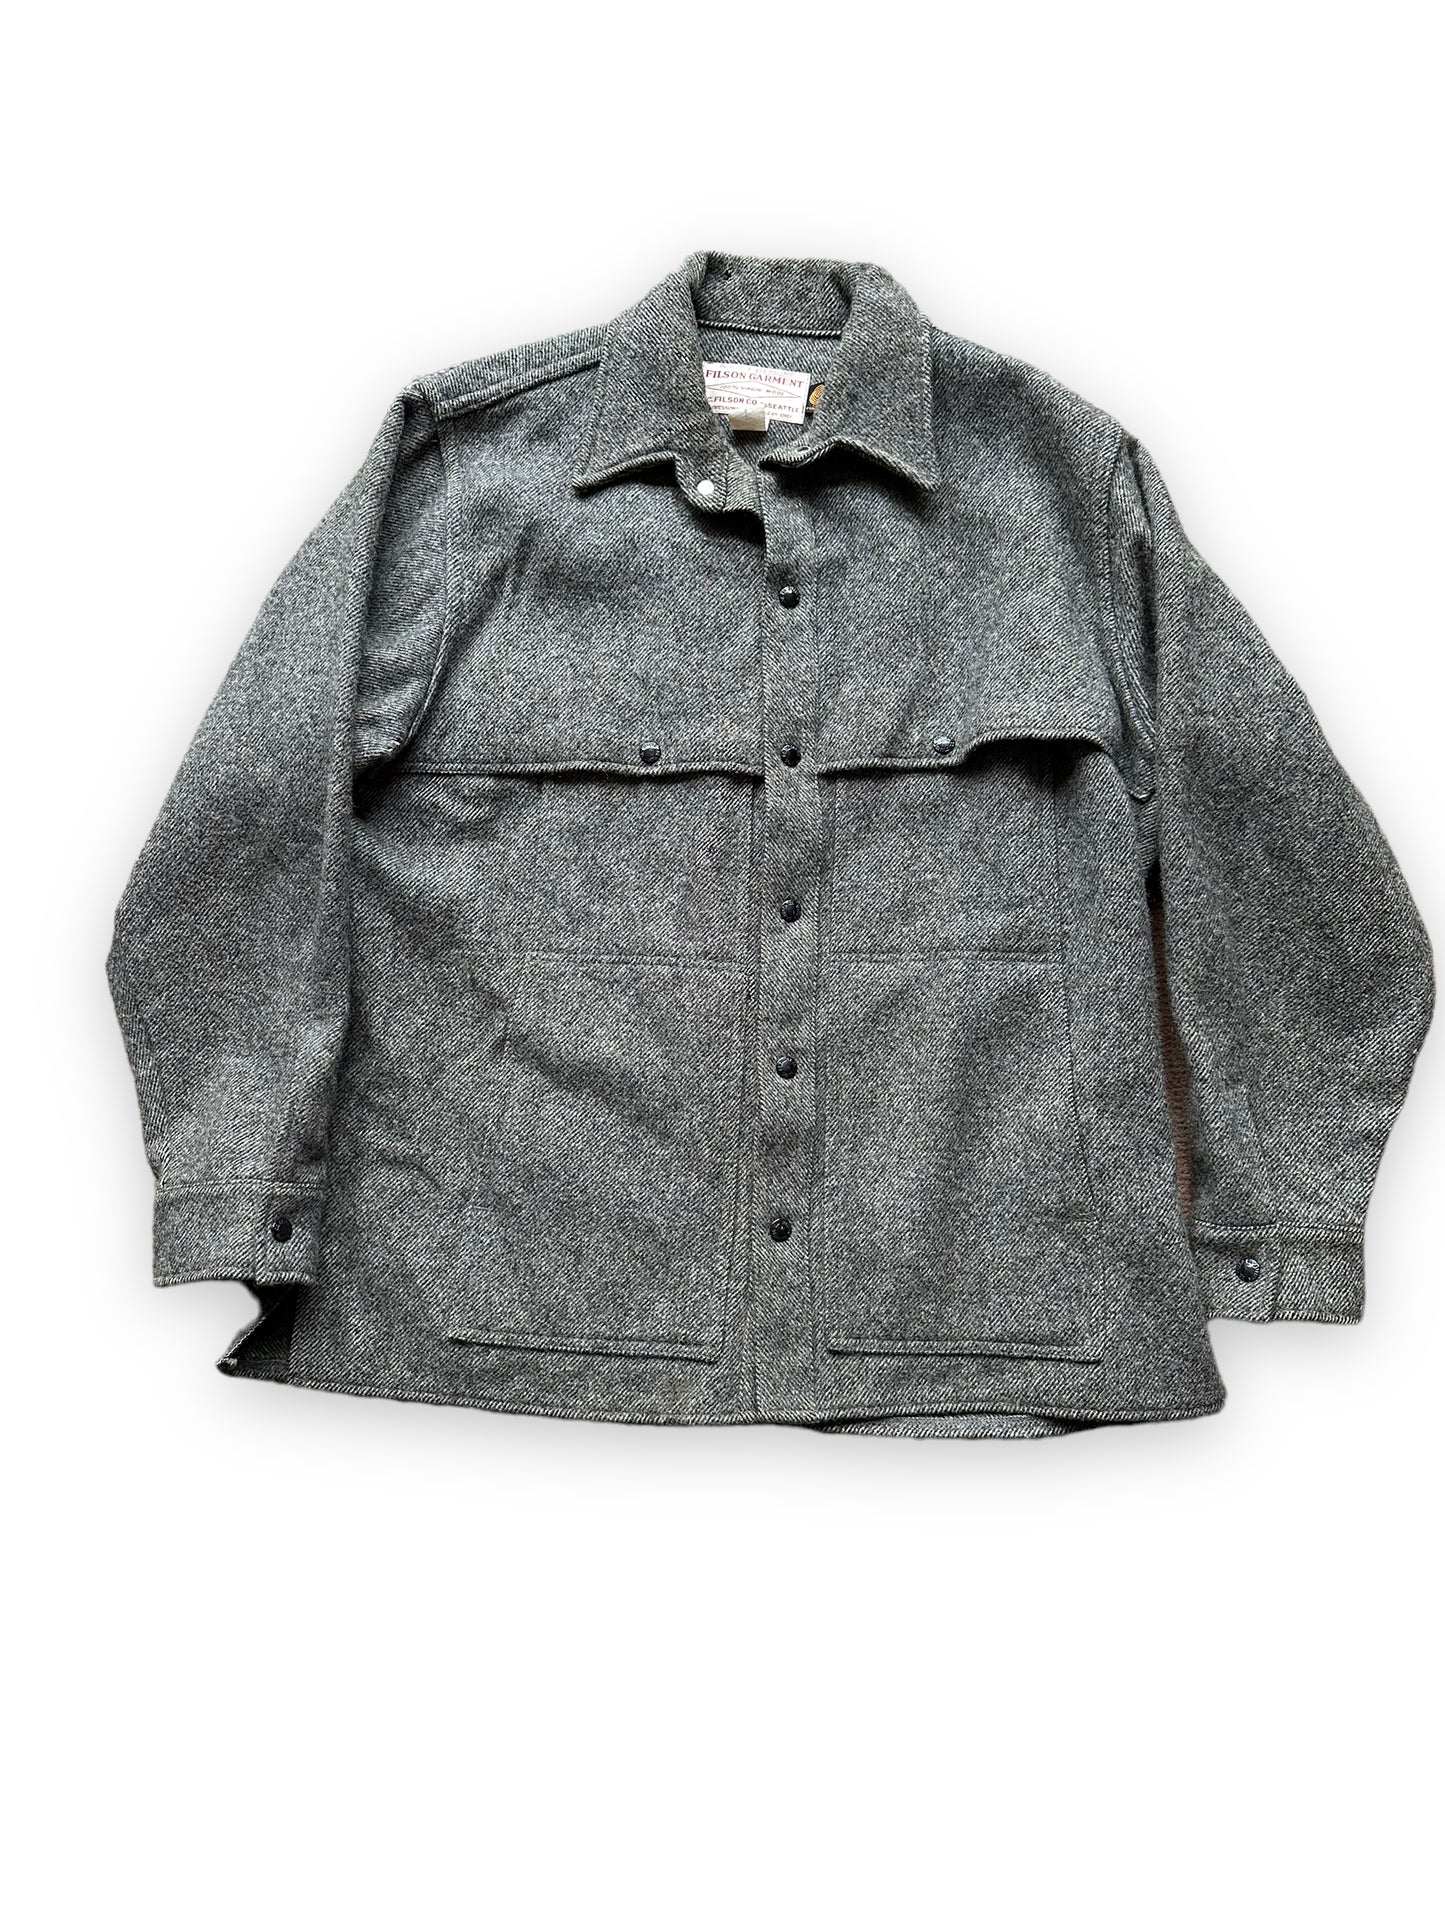 Front View of Vintage Filson Grey Herringbone Cape Coat SZ Large  |  Barn Owl Vintage Goods | Vintage Wool Workwear Seattle